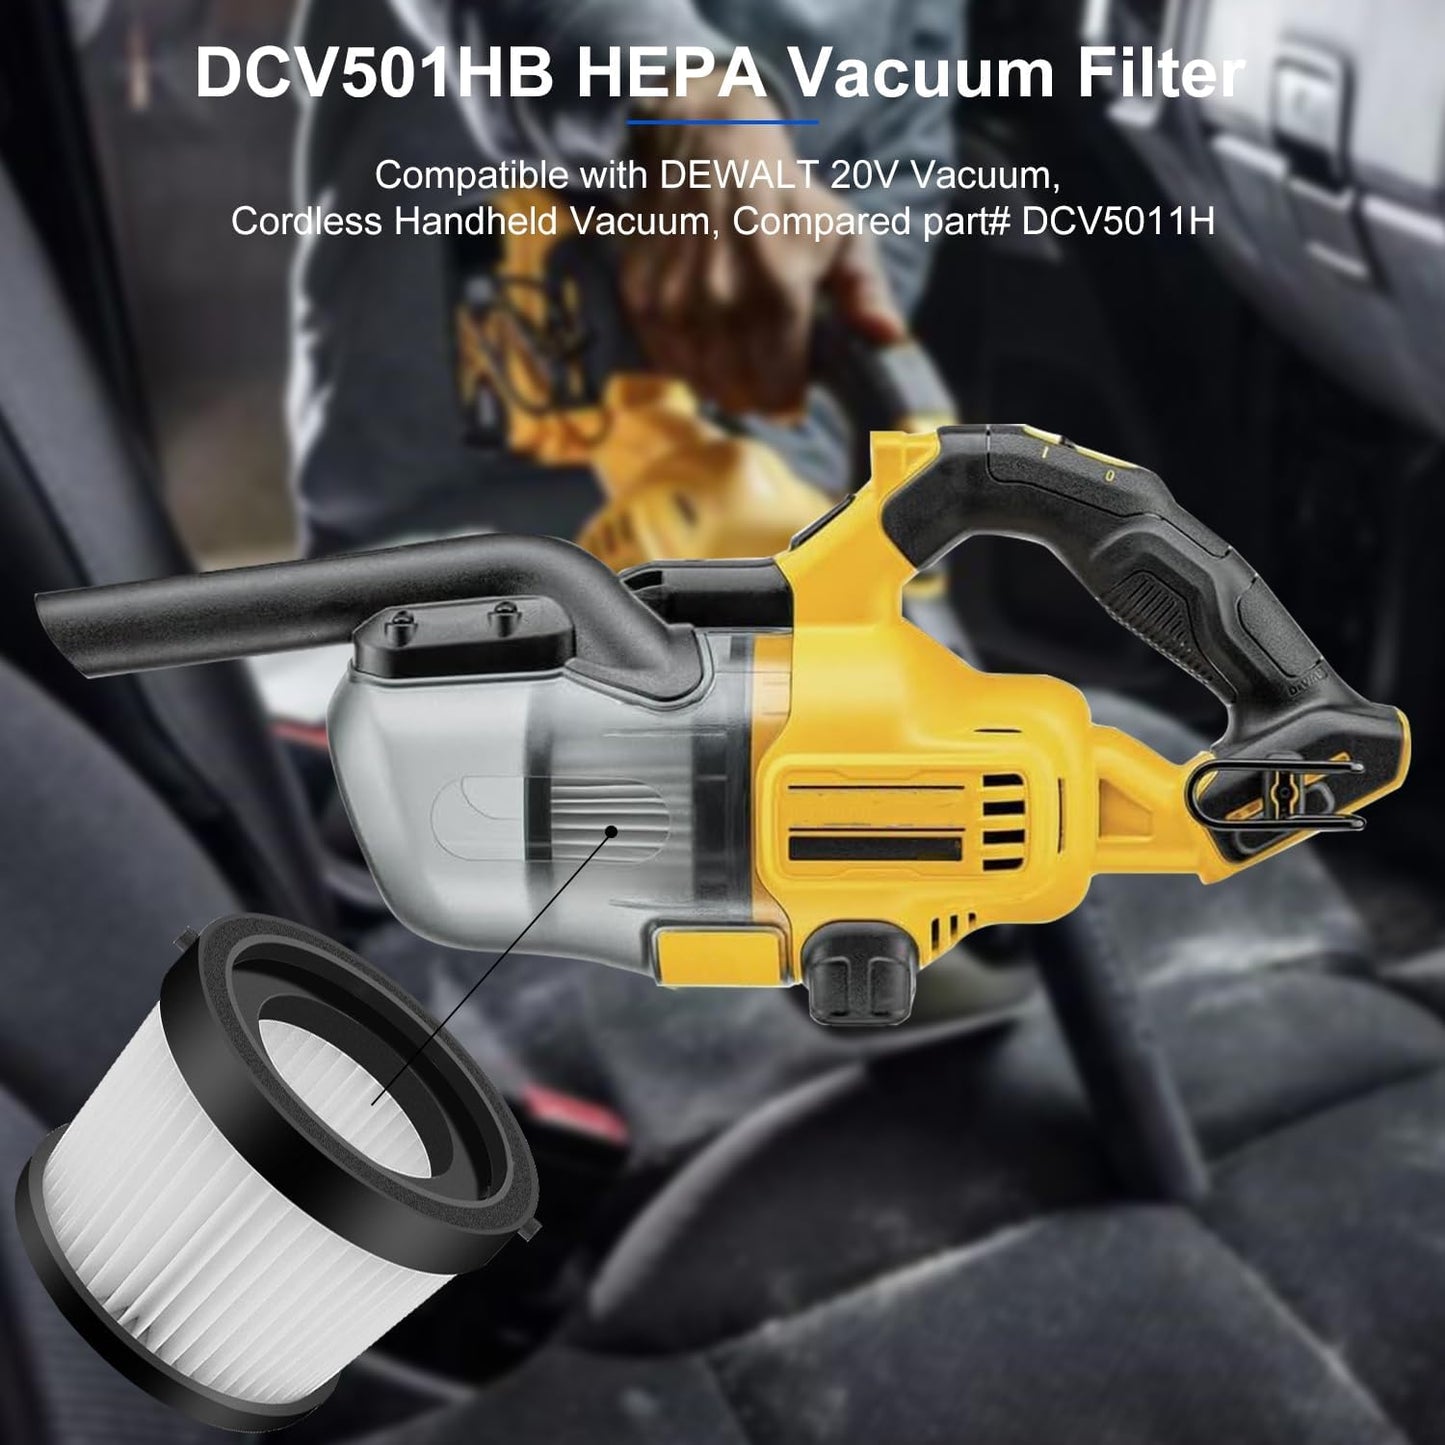 3 Pack DCV501HB Filters for DEWALT 20V Cordless Handheld Vacuums